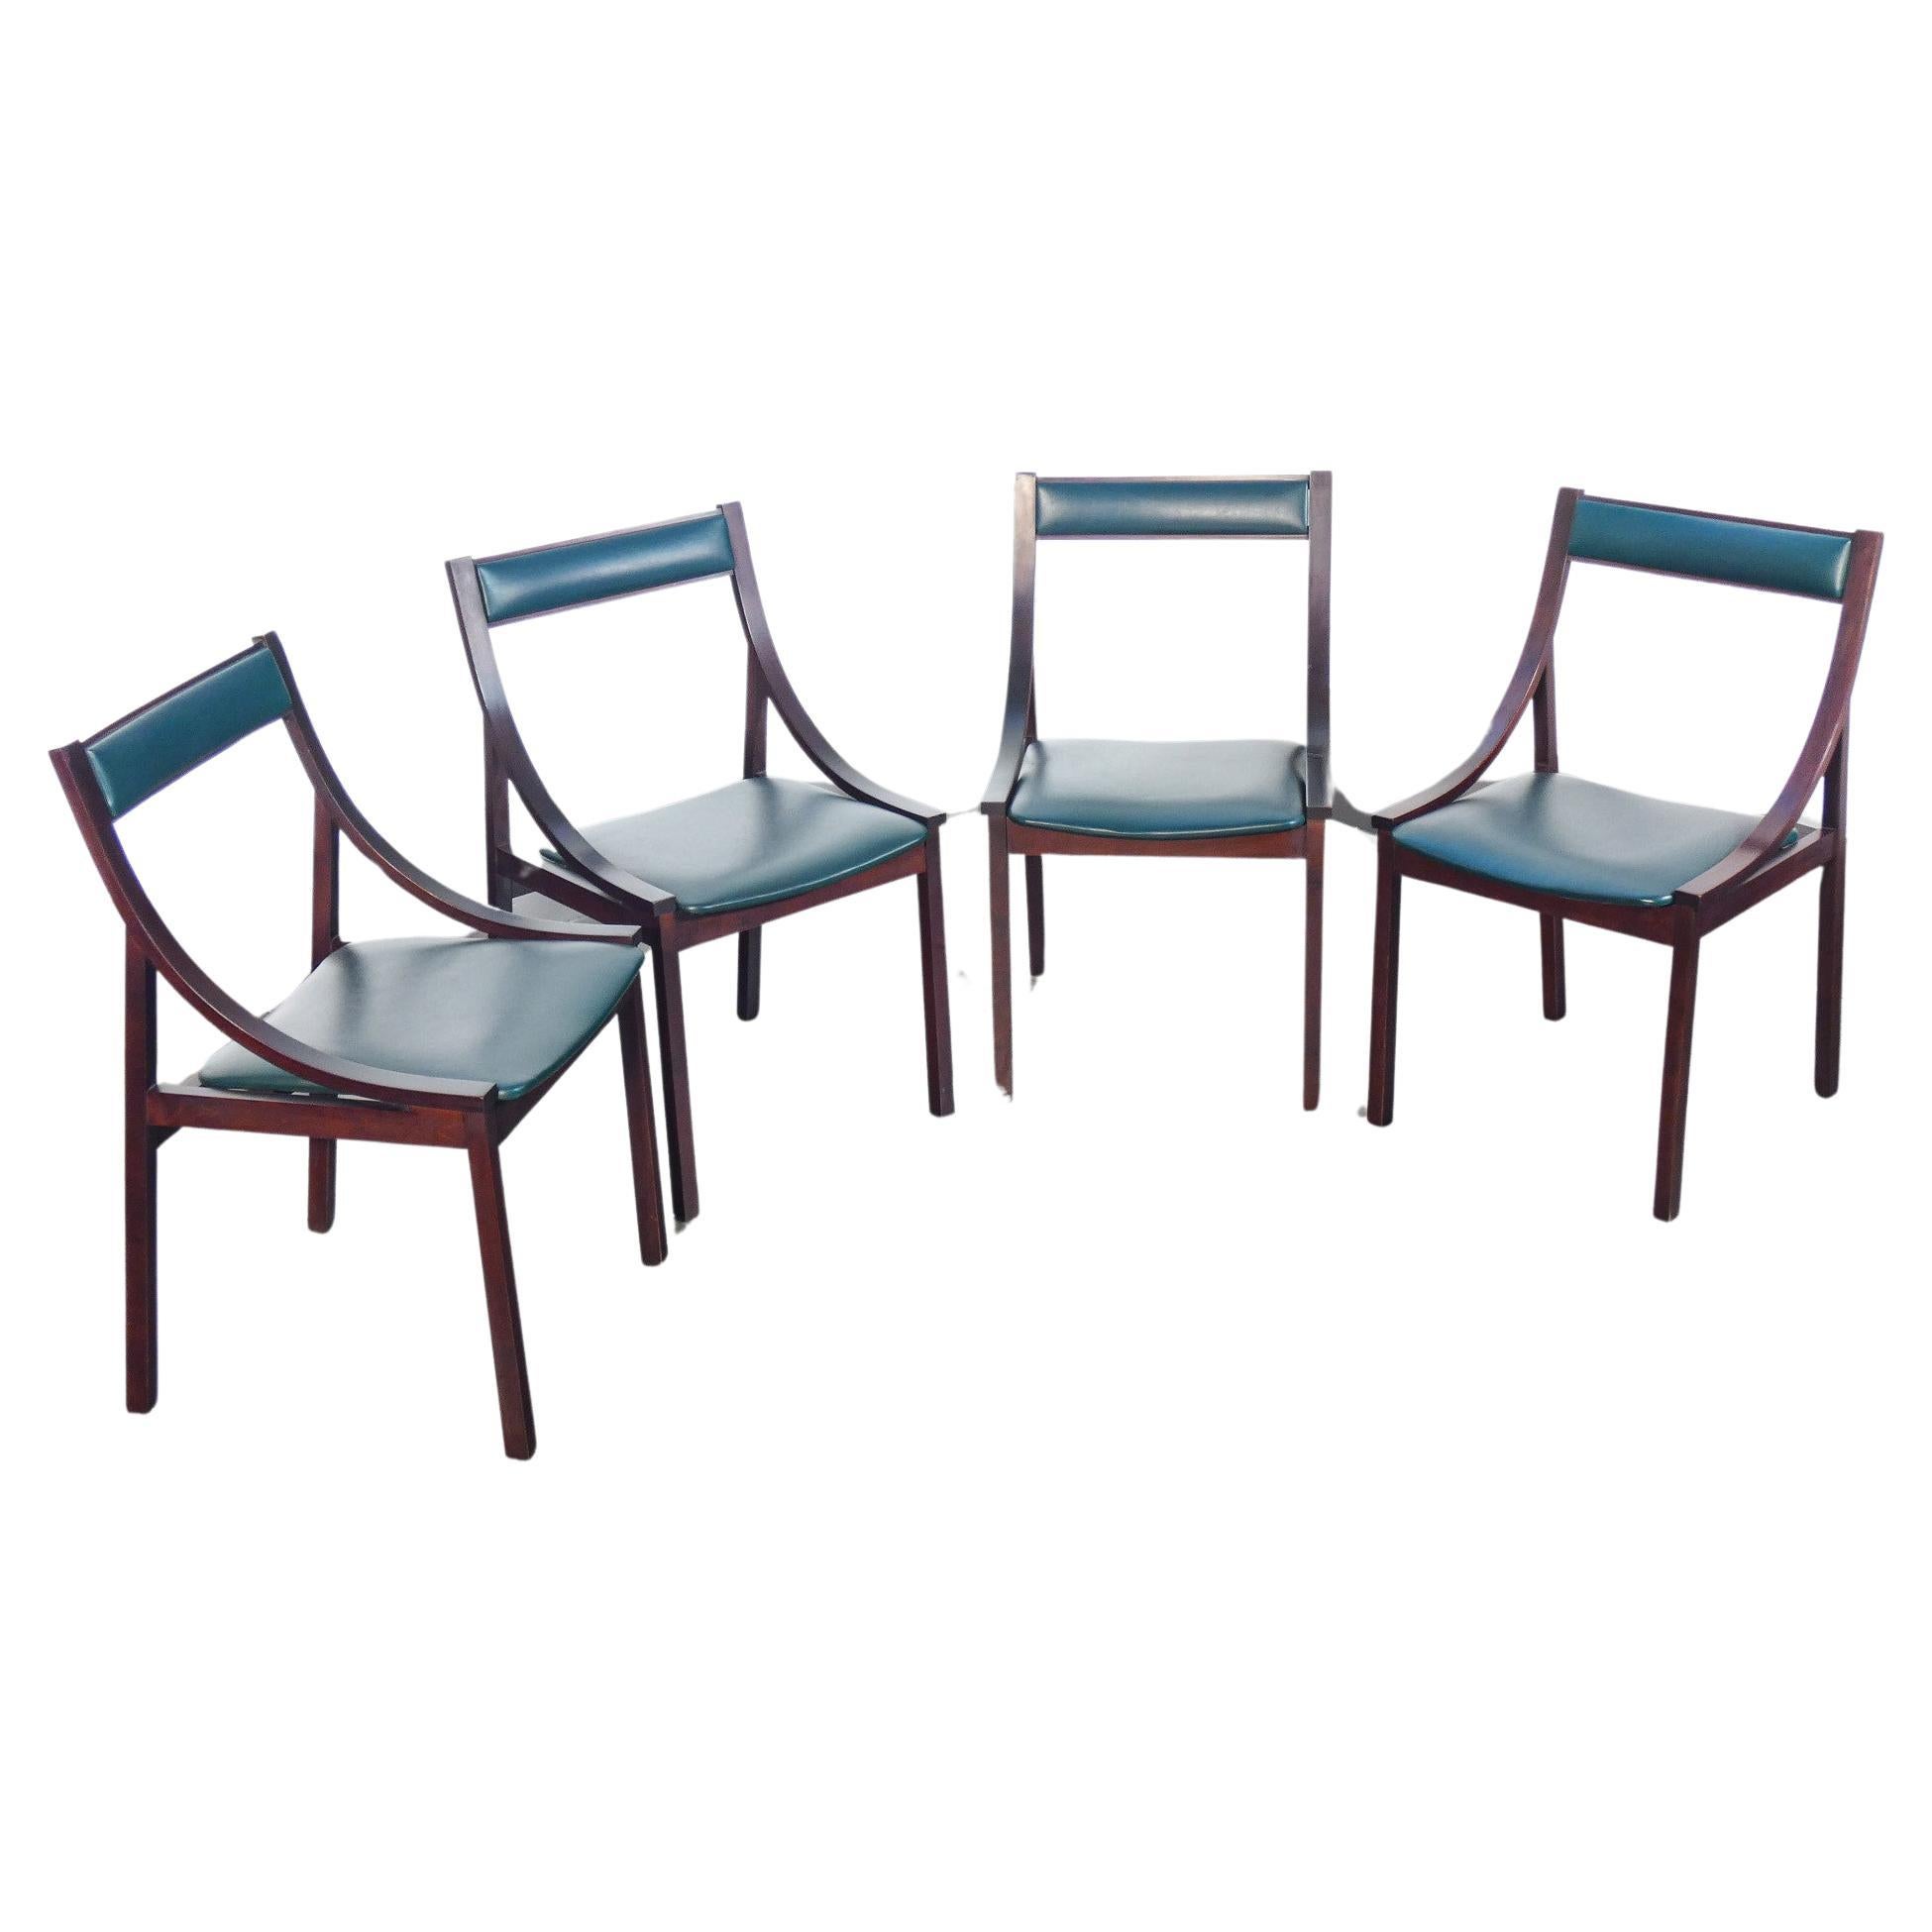 Quatre chaises conçues par Carlo DE CARLI pour SORMANI. Italie, années 1960